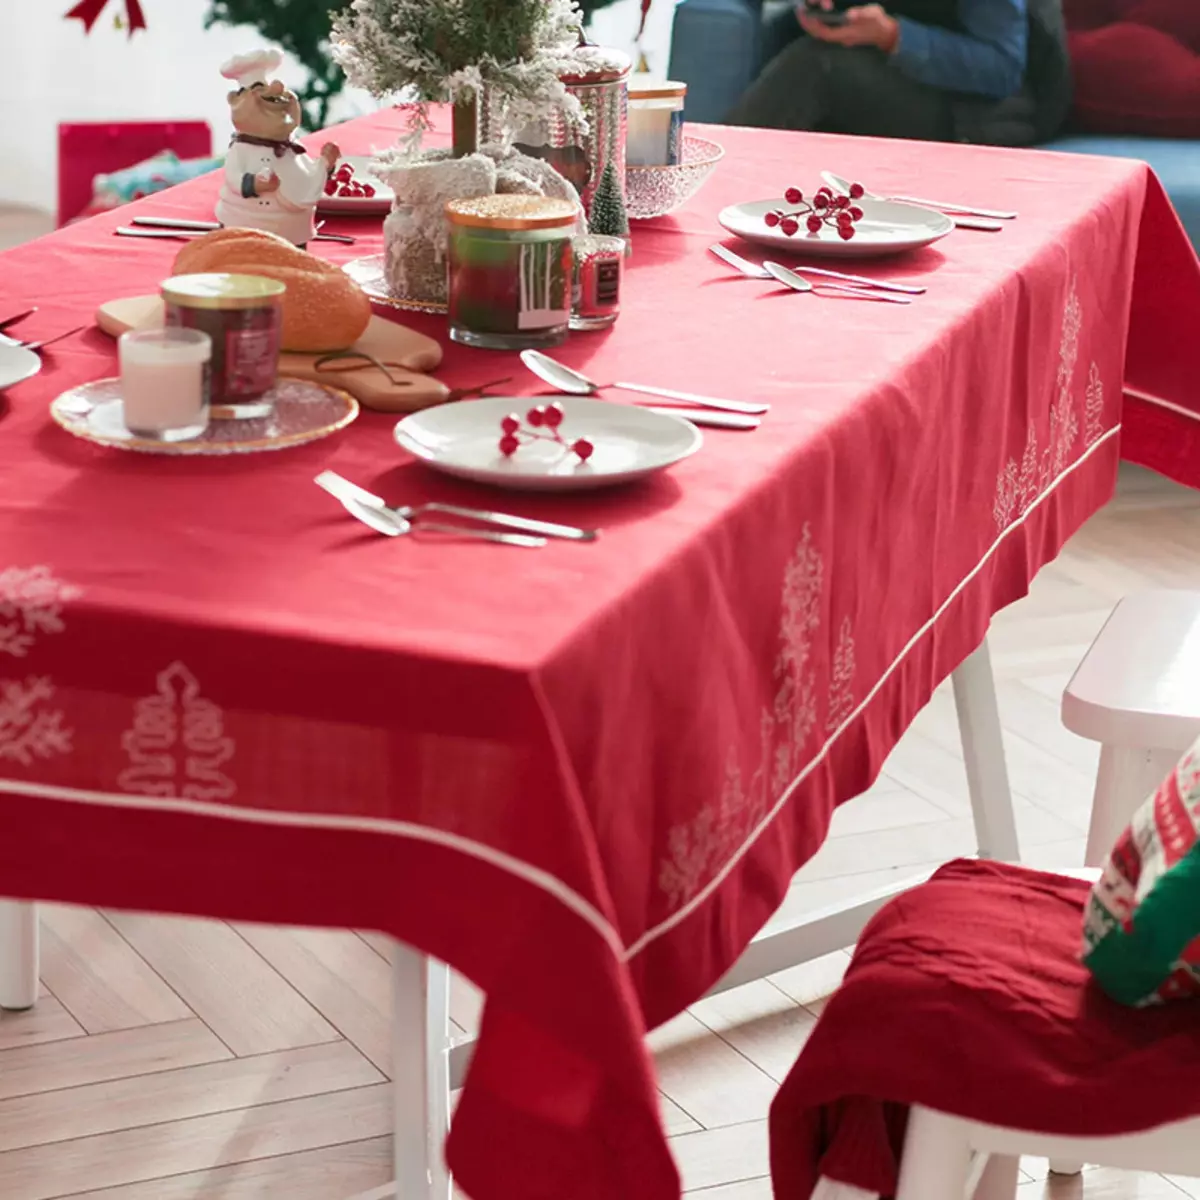 Red TableCloths: Sa isang round table 180 cm at hugis-parihaba, sa isang hawla at monochrome tablecloths. Mga pamamaraan ng paghahatid. Linen tablecloth na may snowflakes at iba pang mga pagpipilian 21598_20